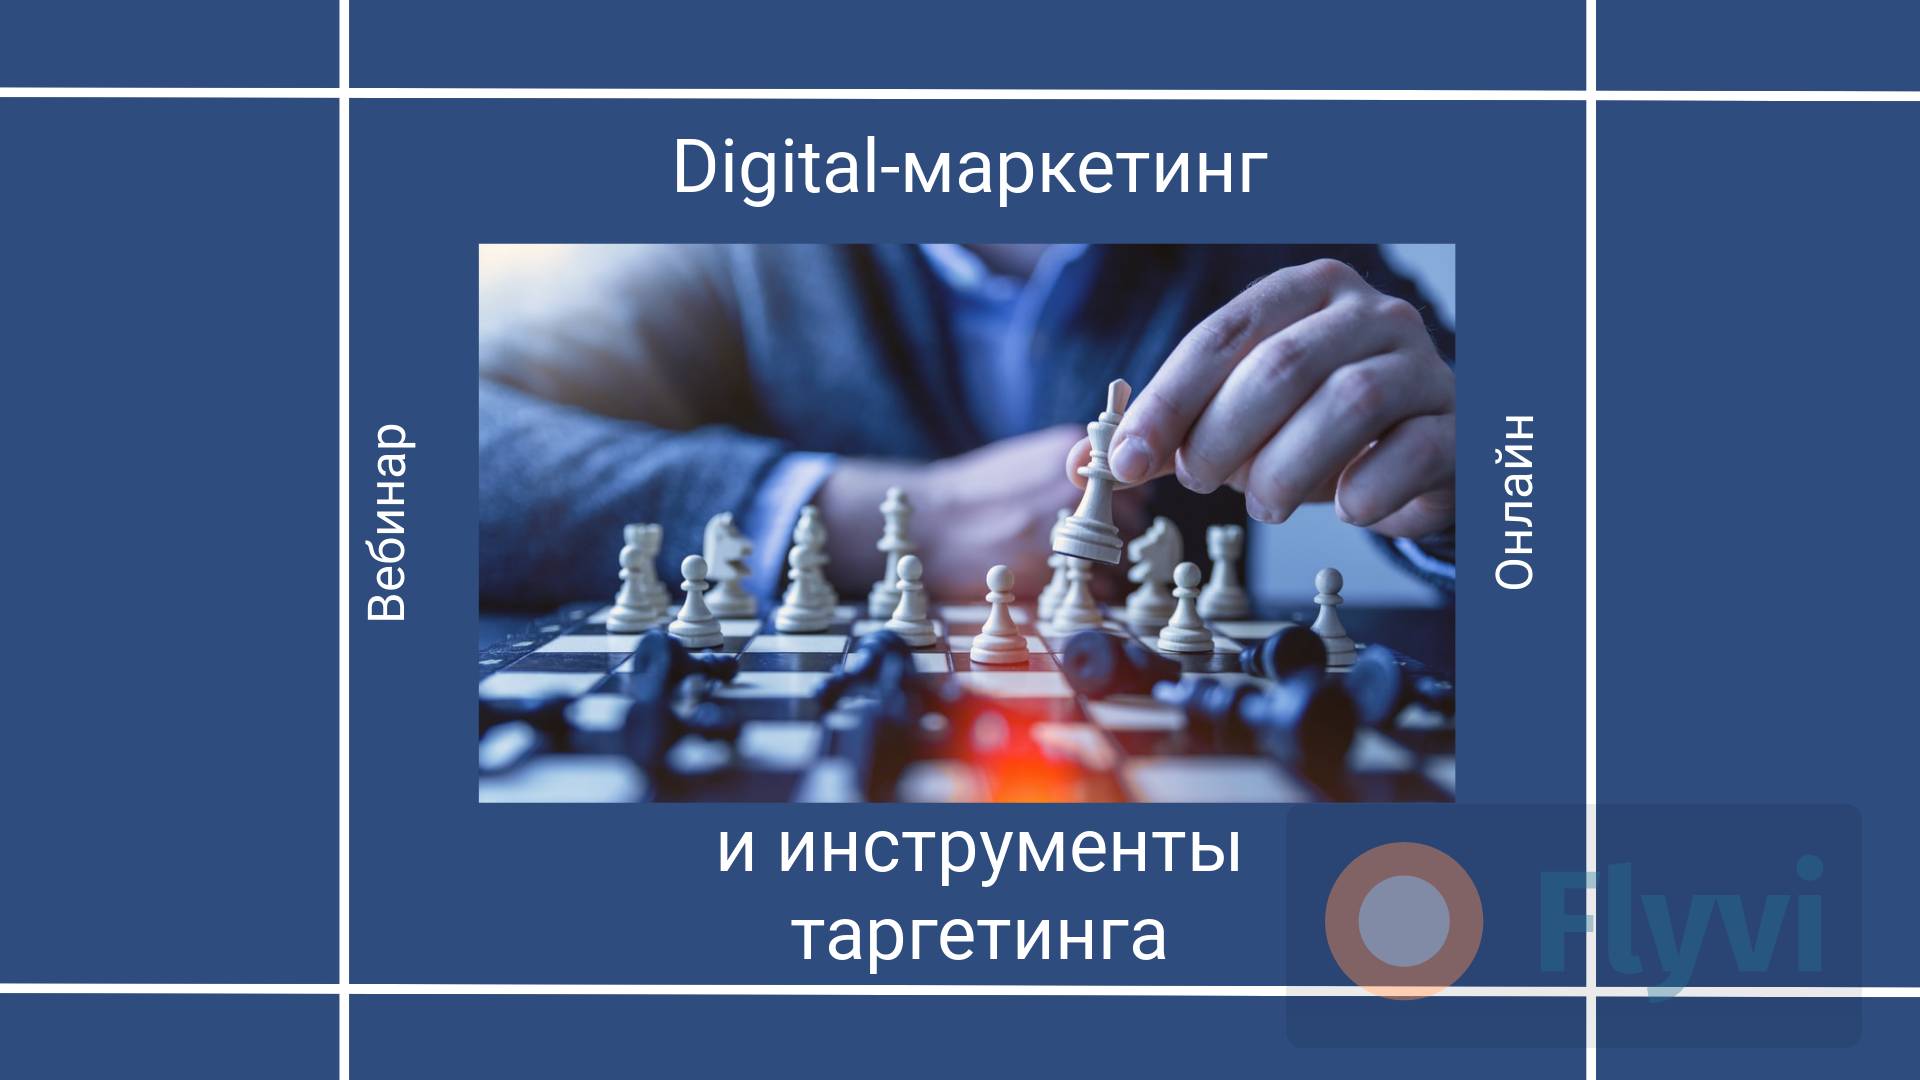 Обложка для вебинара на тему диджитал маркетинга с фото игры в шахматы